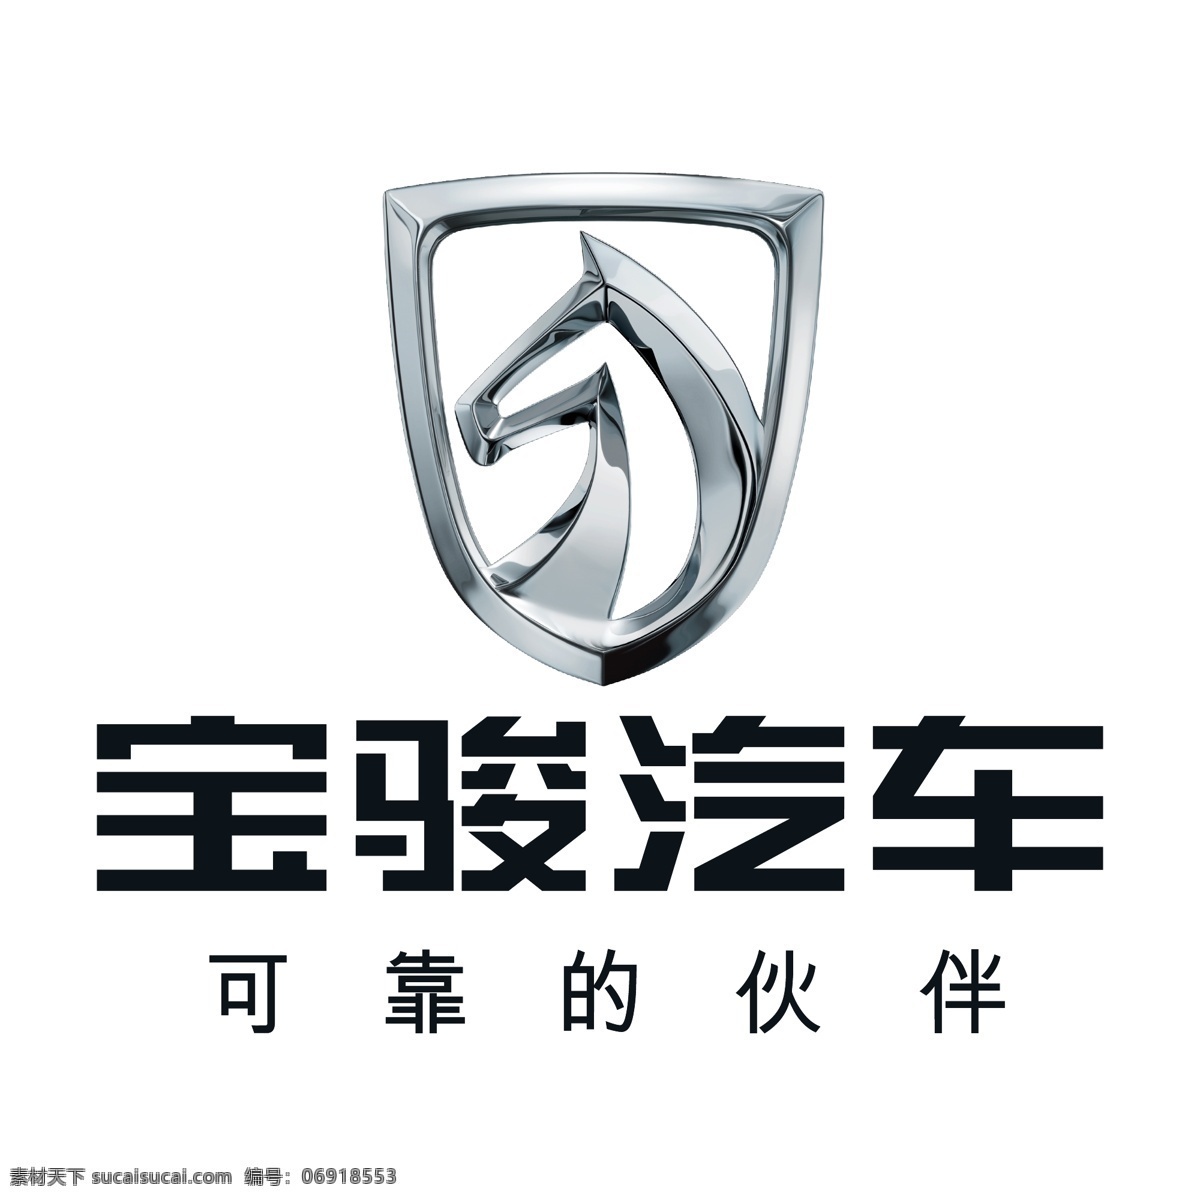 宝 骏 汽车 logo 宝骏汽车 图标 图形 矢量 可靠的伙伴 logo集合 标志图标 企业 标志